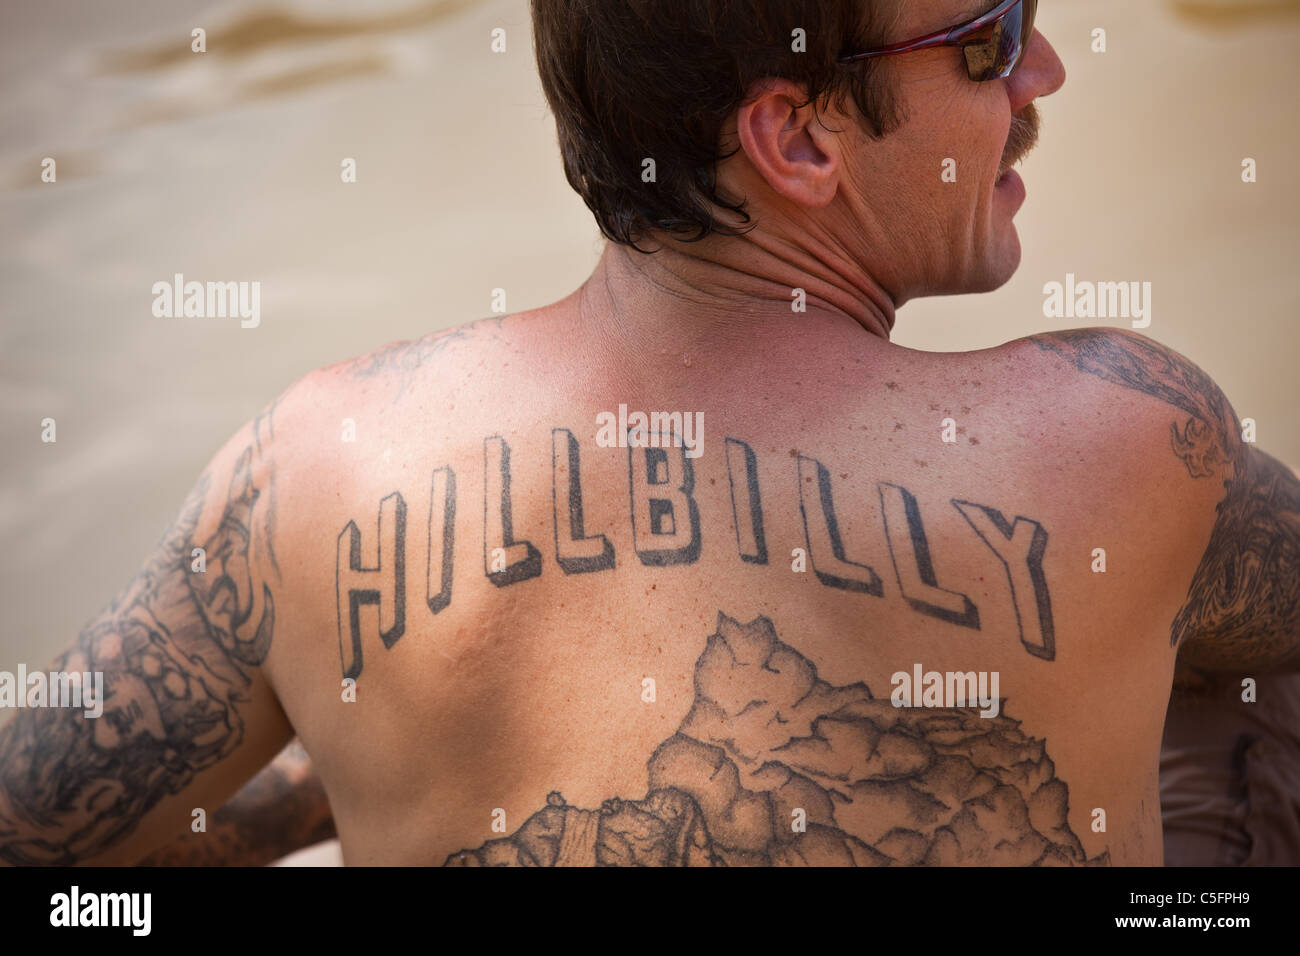 Tattoo Spiele Stockfotos und -bilder Kaufen - Alamy